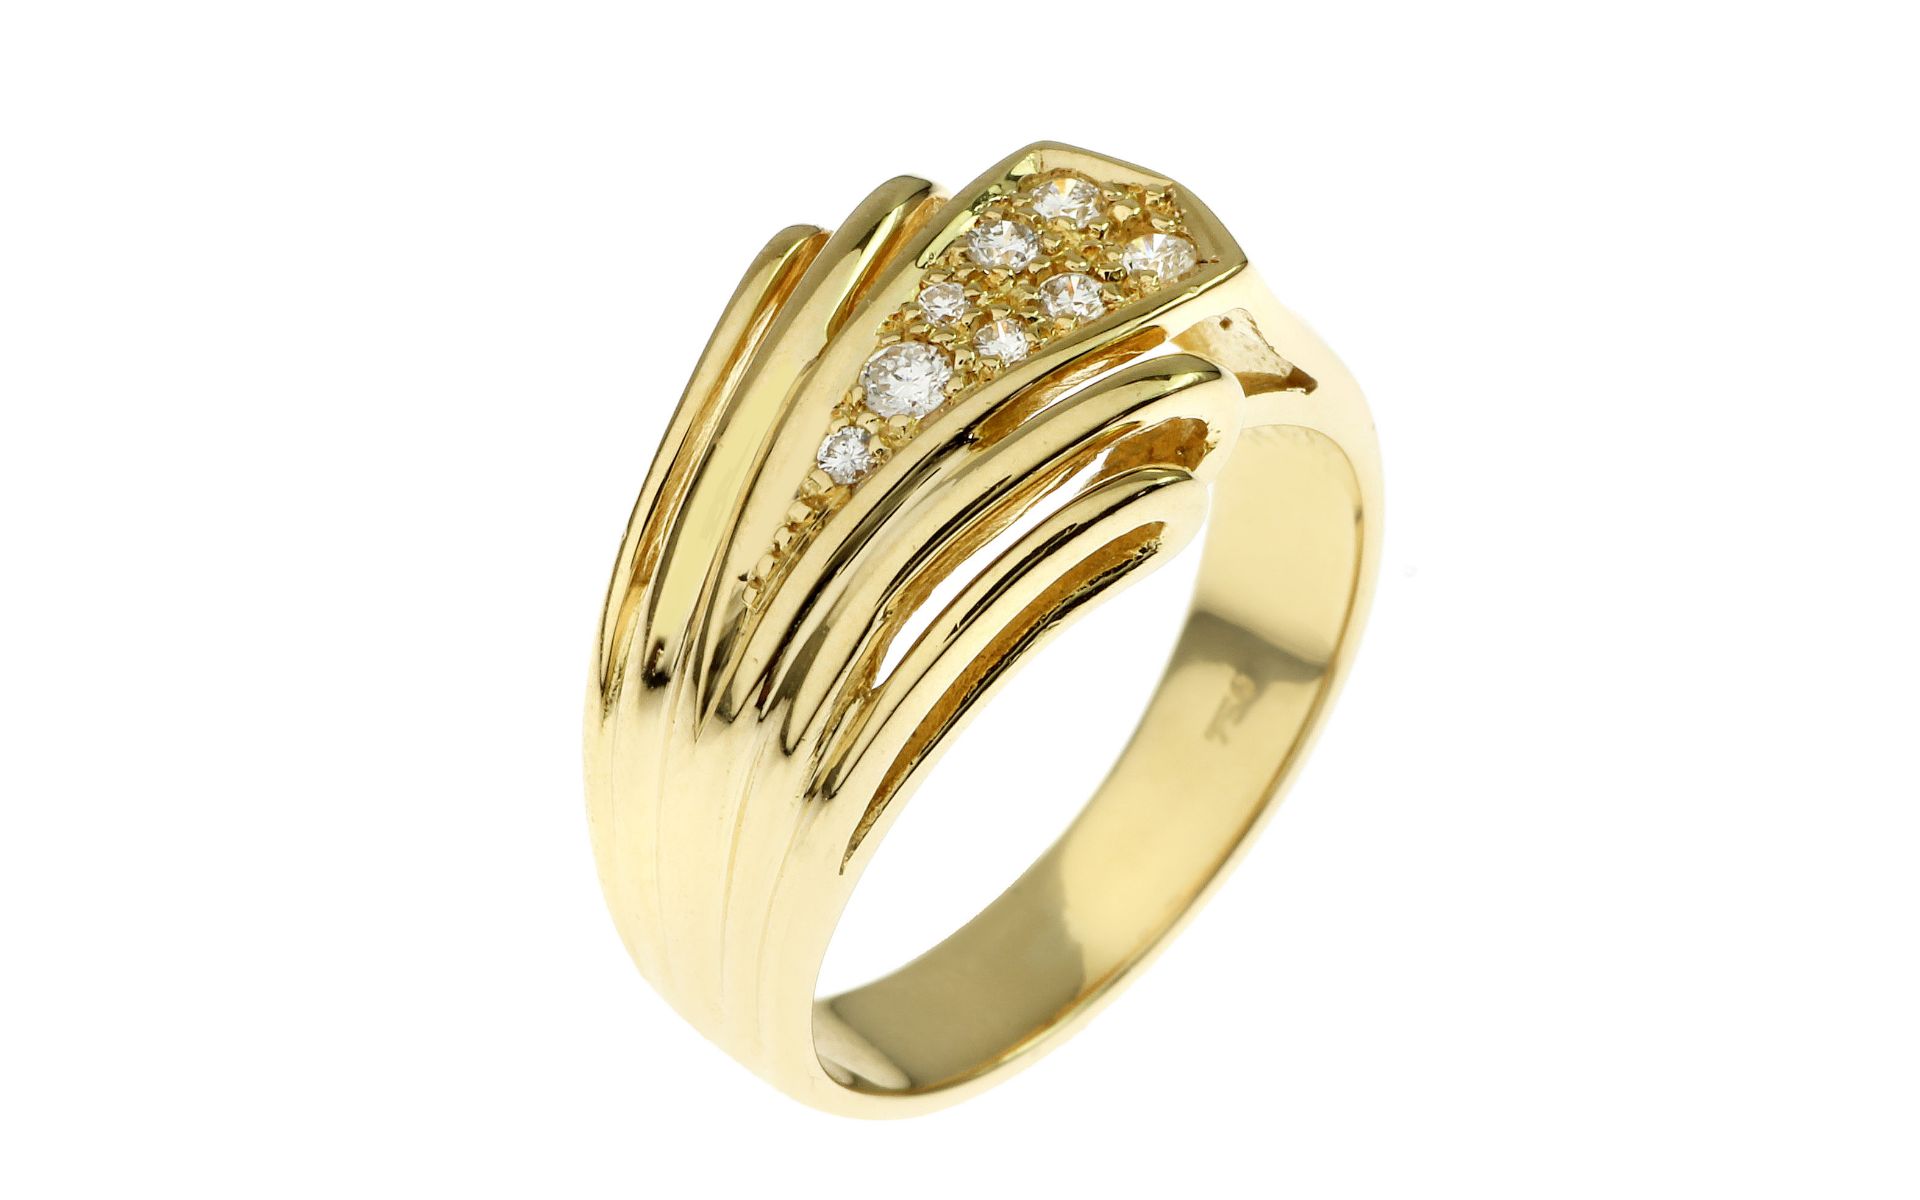 Ring 6.95 g 750/- Gelbgold mit Diamanten. 8 Diamanten zus. ca. 0.16 ct.. Ringgroesse ca. 53